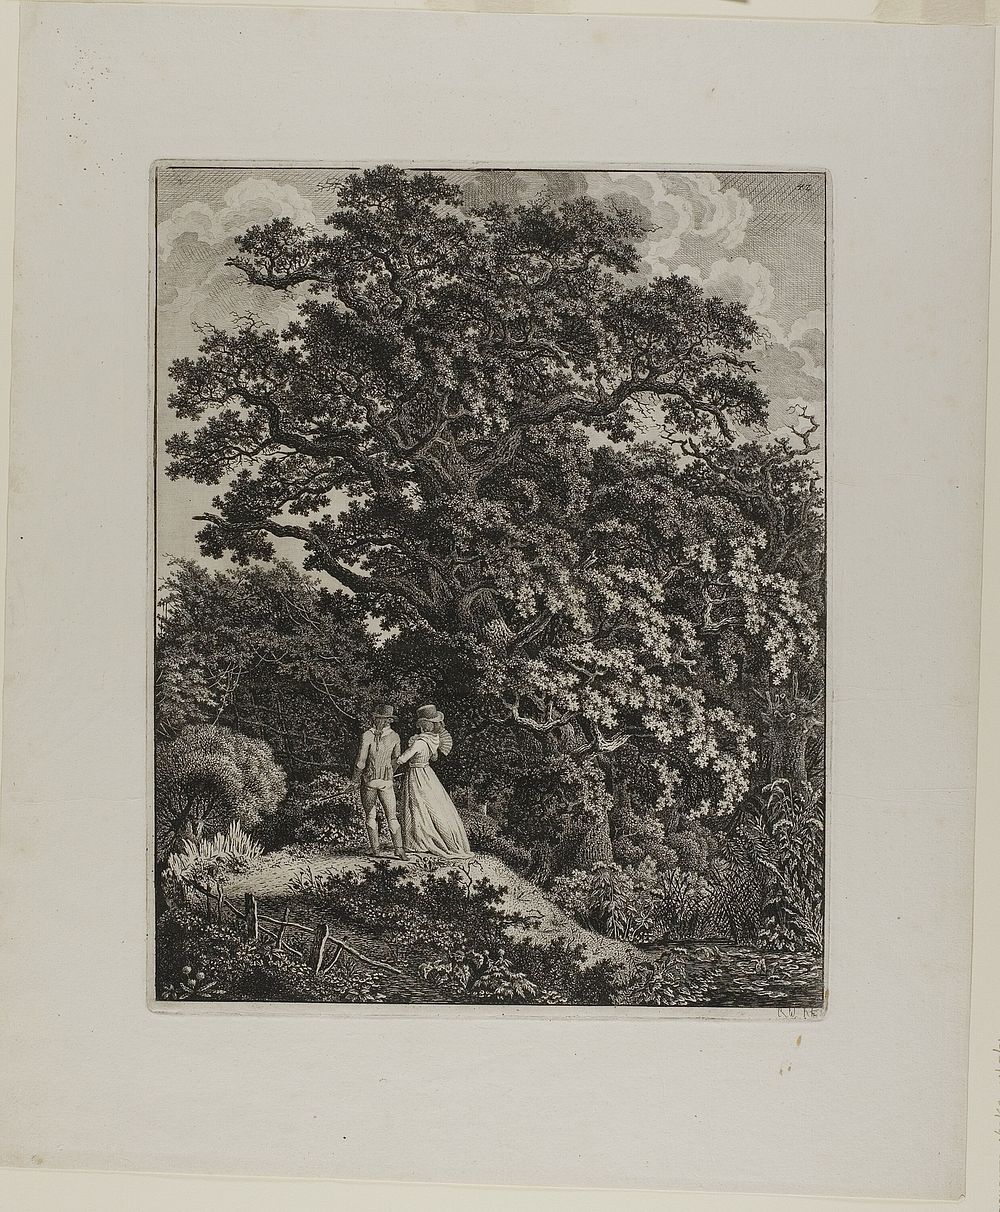 Woodland Landscape with an Elegant Couple Walking Beneath an Oak by Carl Wilhelm Kolbe, the elder